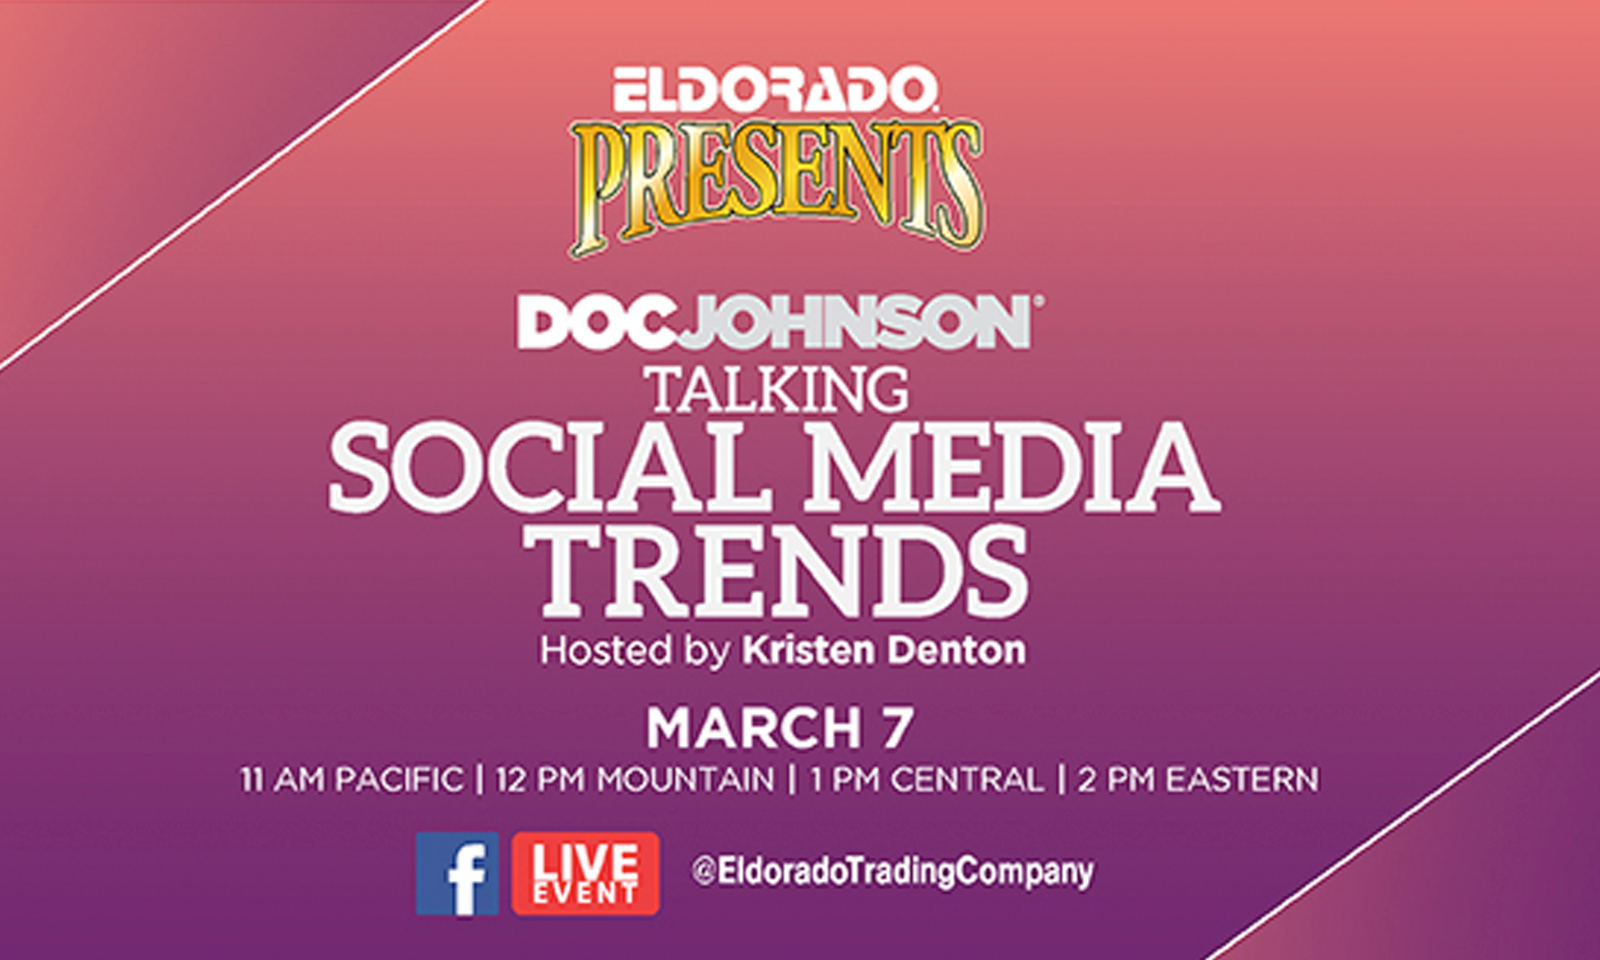 Eldorado’s Next Facebook Live Event Tackles Social Media Trends